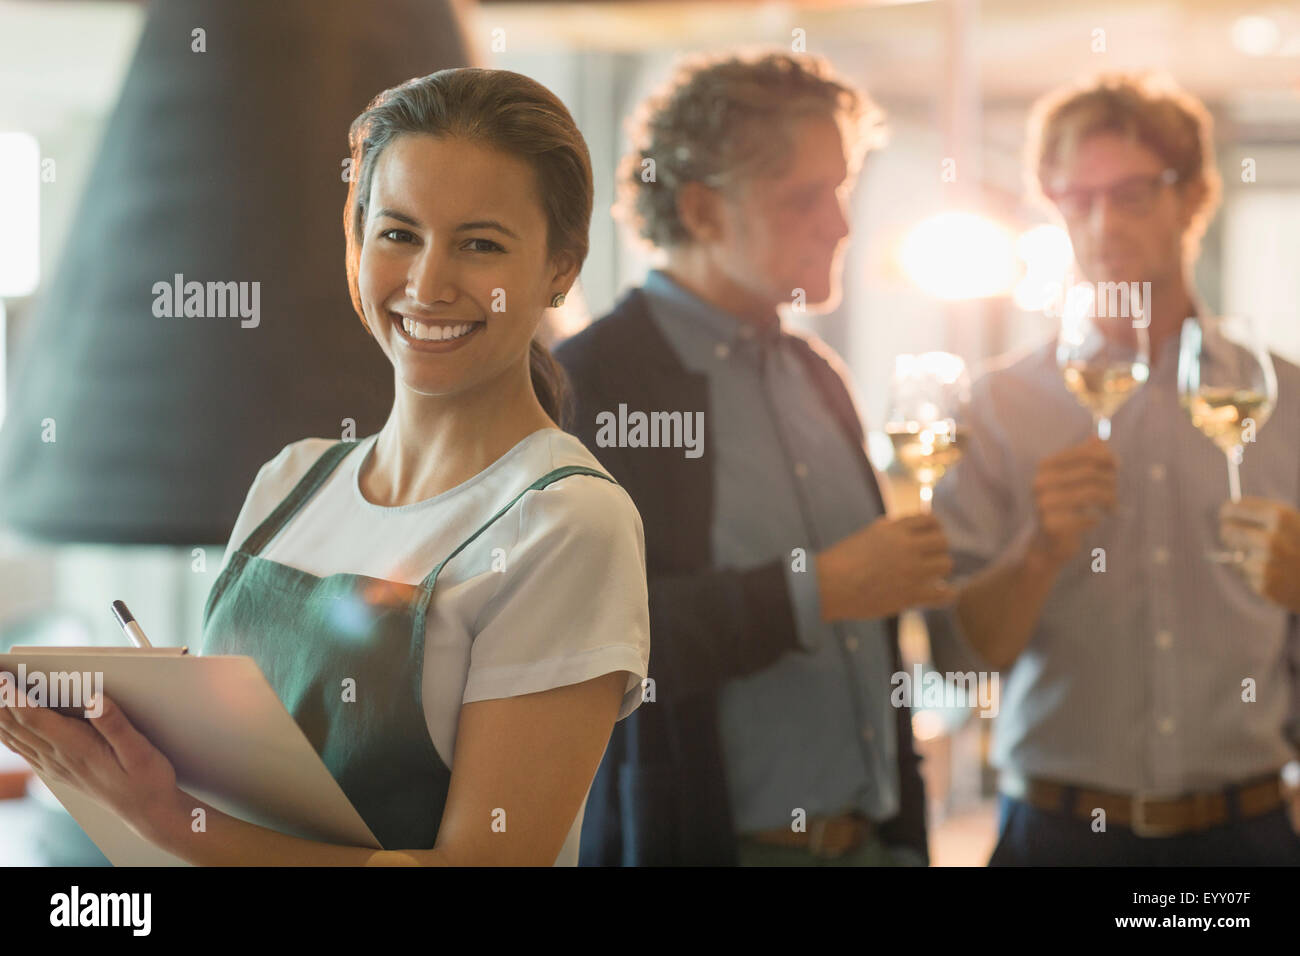 Portrait of smiling woman with clipboard travaillant dans la salle de dégustation de vin Banque D'Images